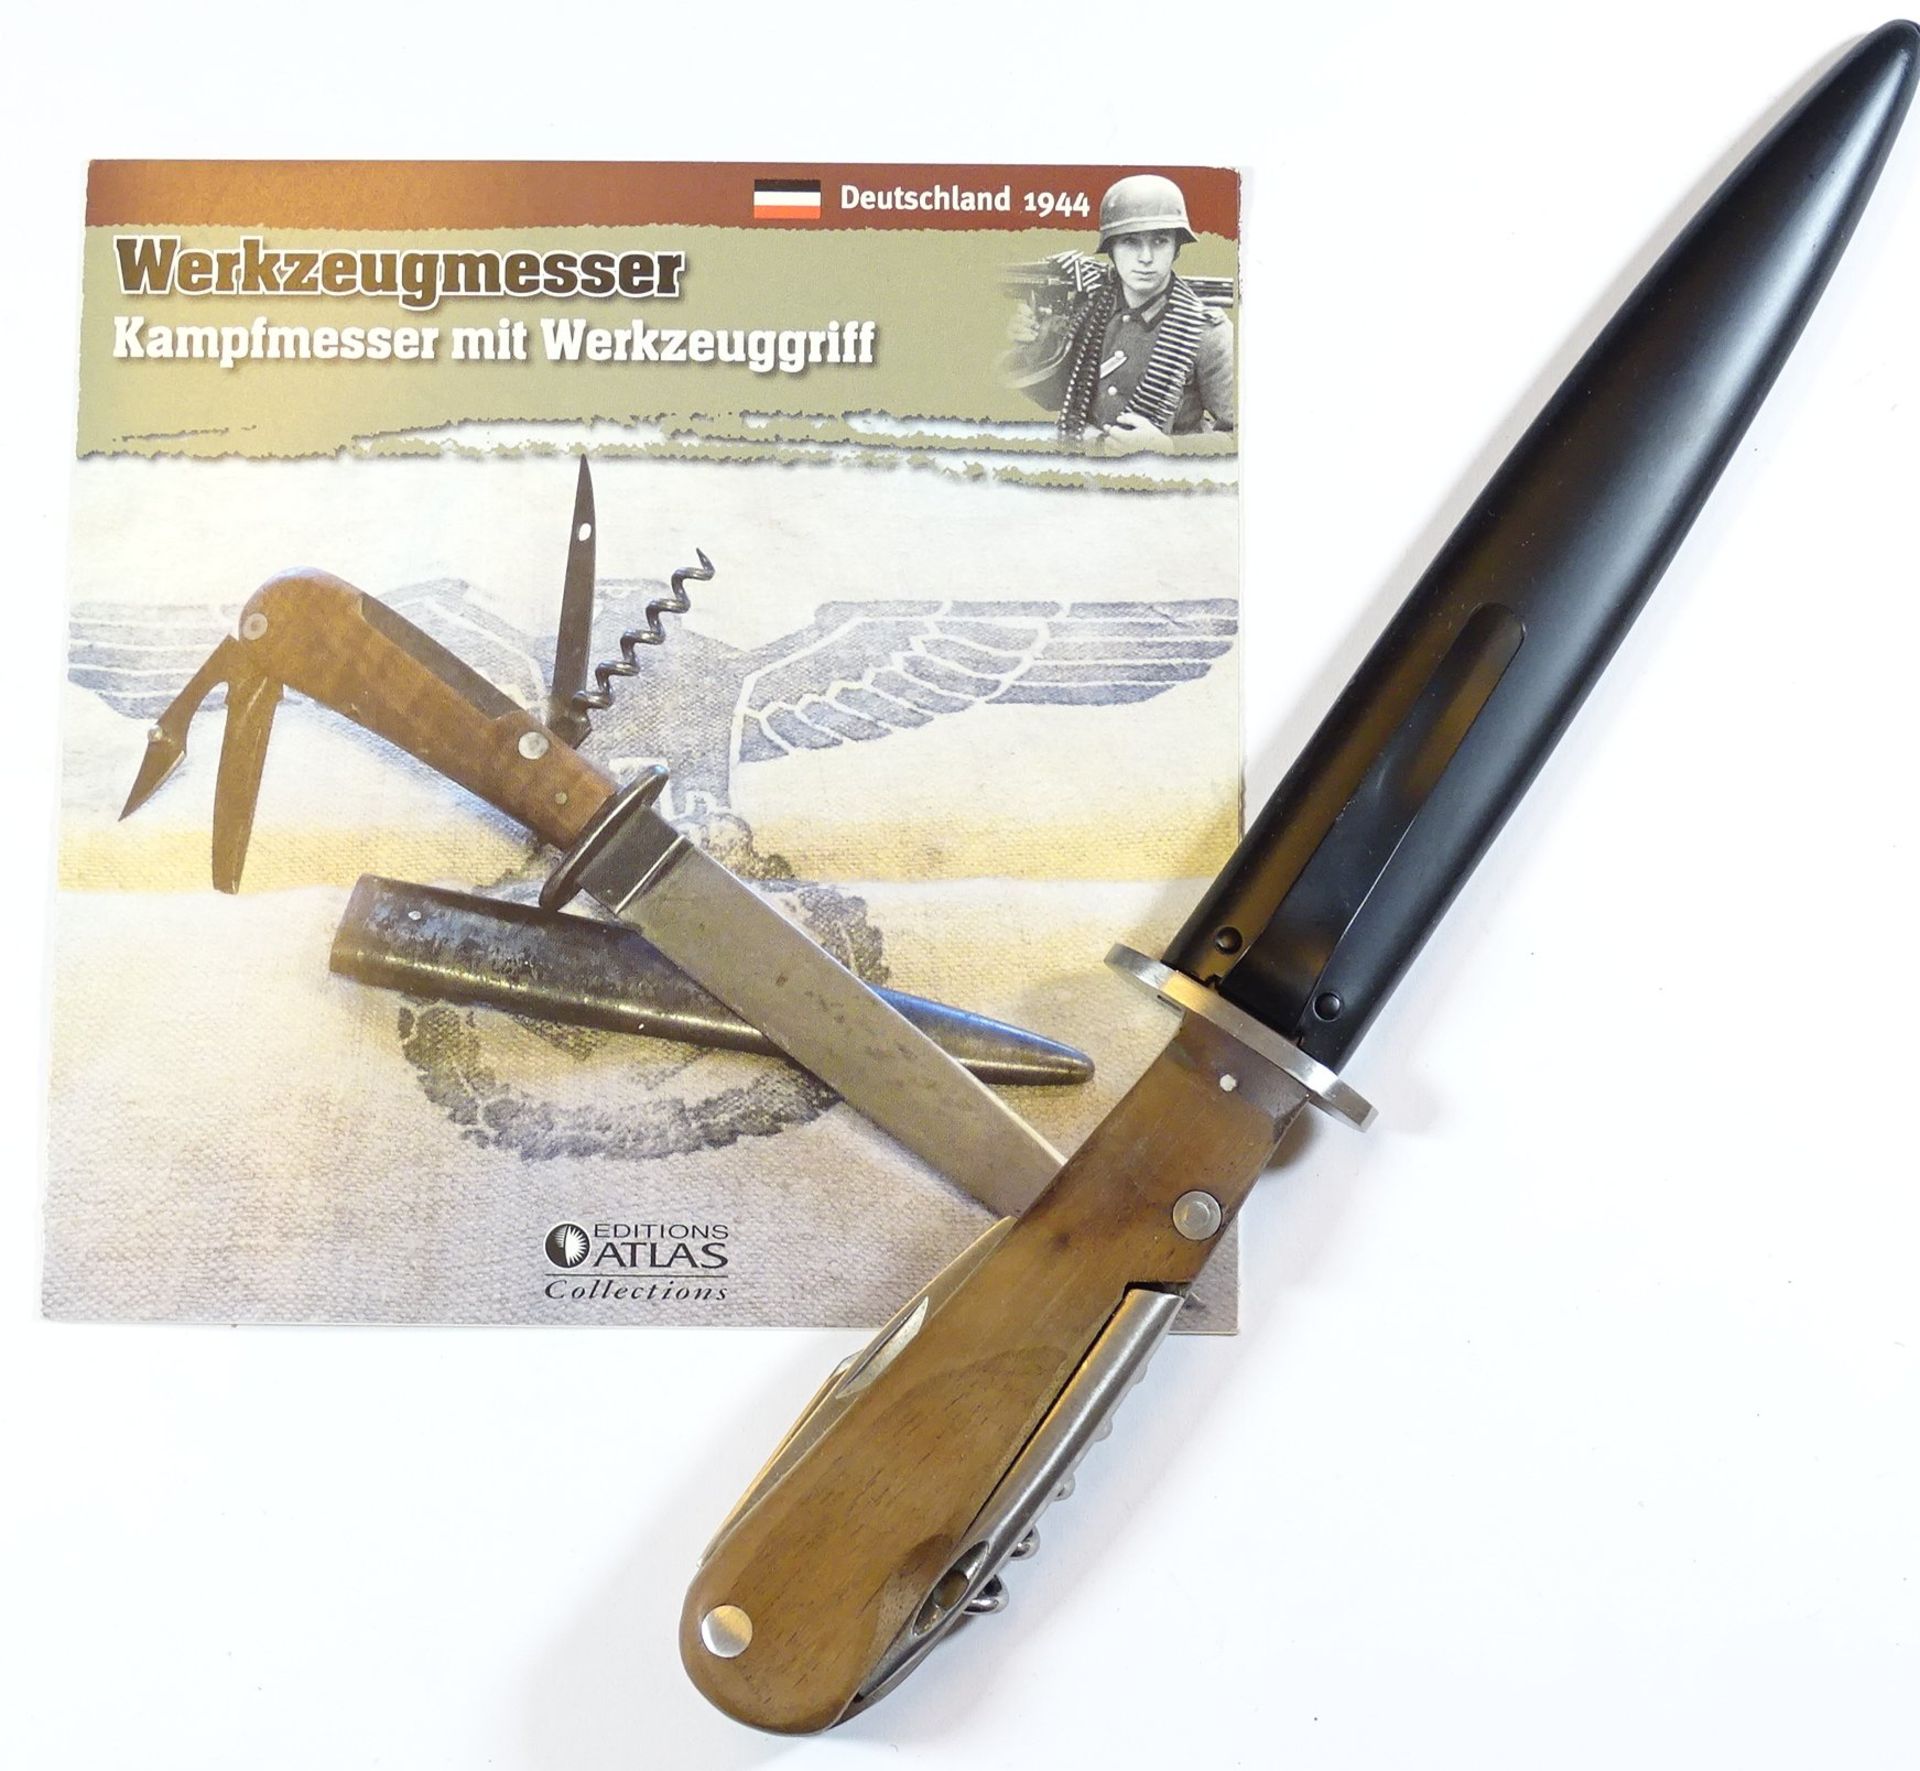 Werkzeugmesser - Kampfmesser mit Werkzeuggriff mit Zertifikat - Sammleranfertigung